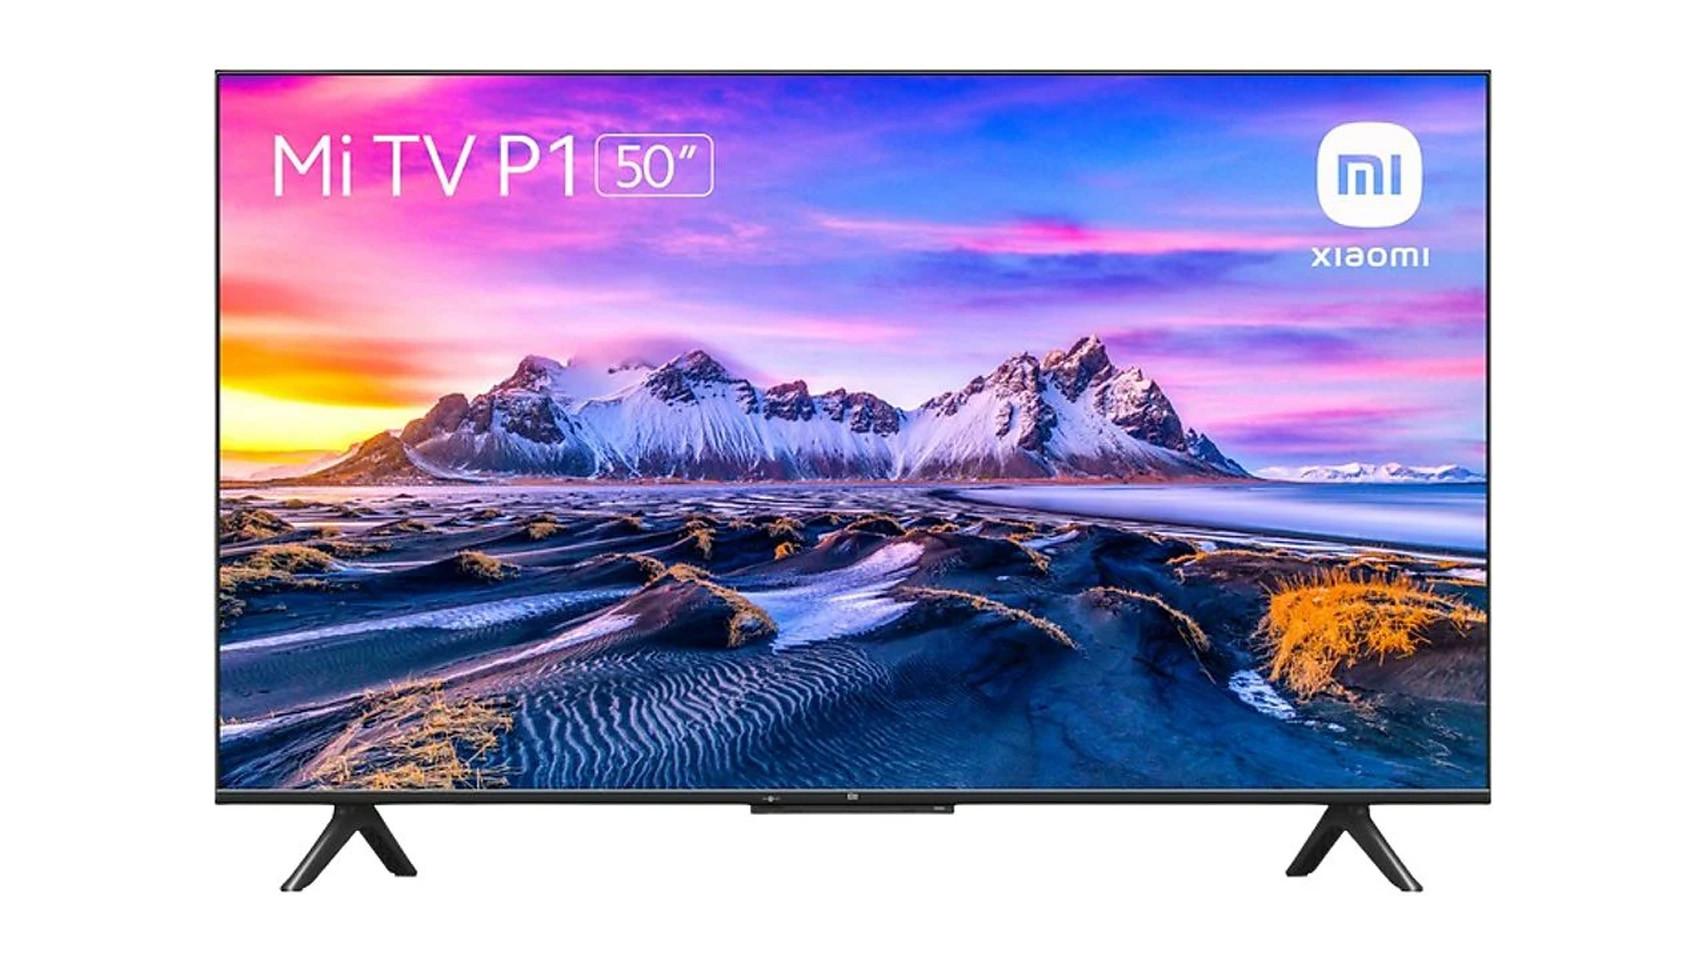 Cae a precio mínimo en MediaMarkt esta televisión pequeña Xiaomi con  Android TV para tu dormitorio o segunda residencia de verano